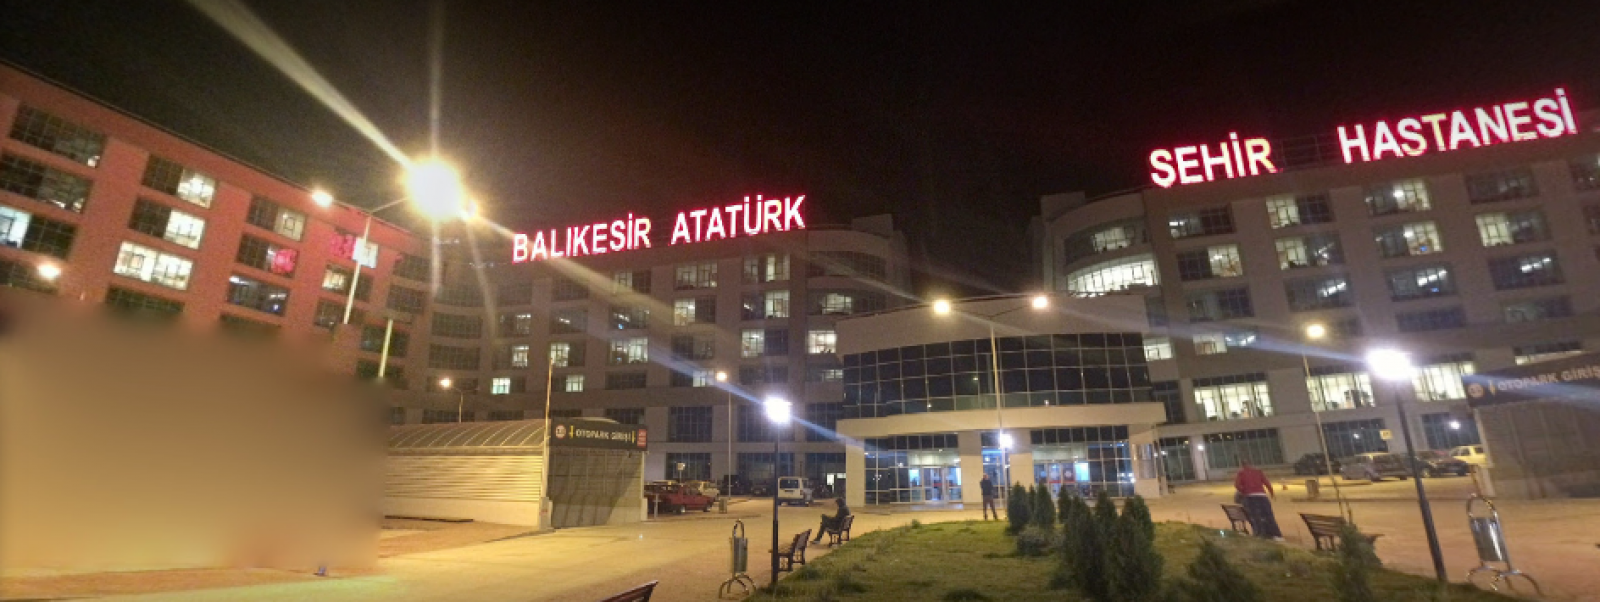 Balıkesir Atatürk Public Hospital